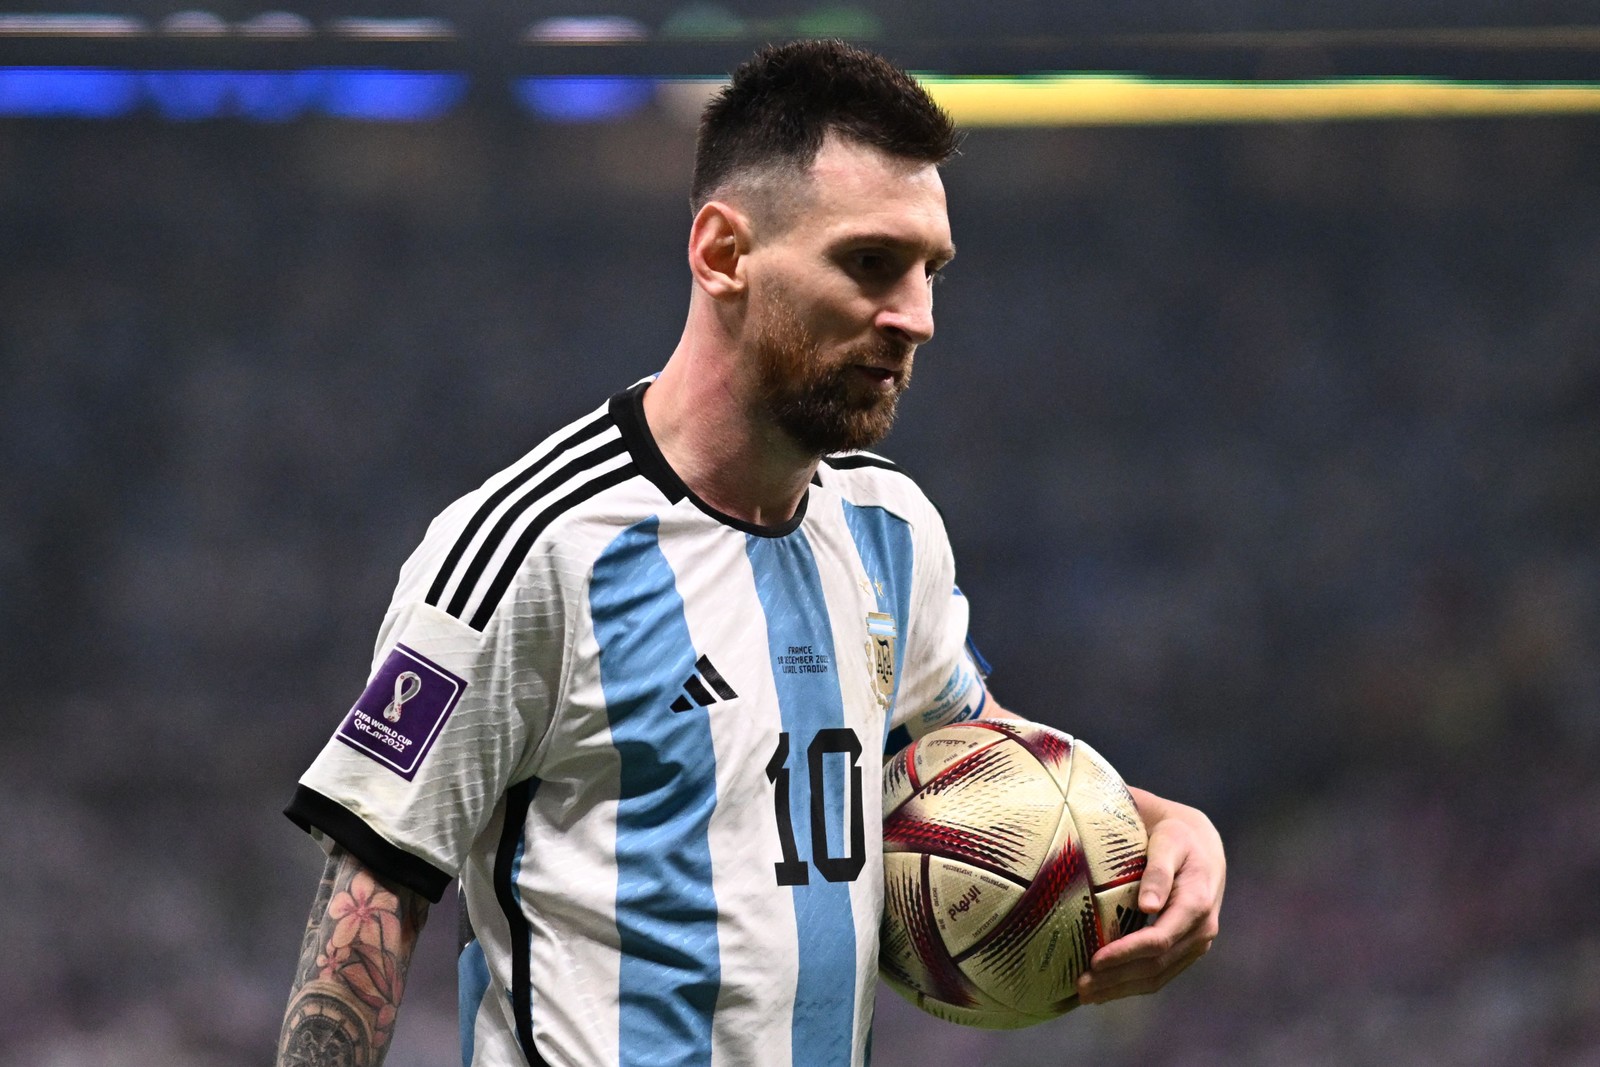 Messi antes de cobrar na disputa de pênaltis que decidiu a final da Copa do Catar — Foto:  Kirill KUDRYAVTSEV / AFP